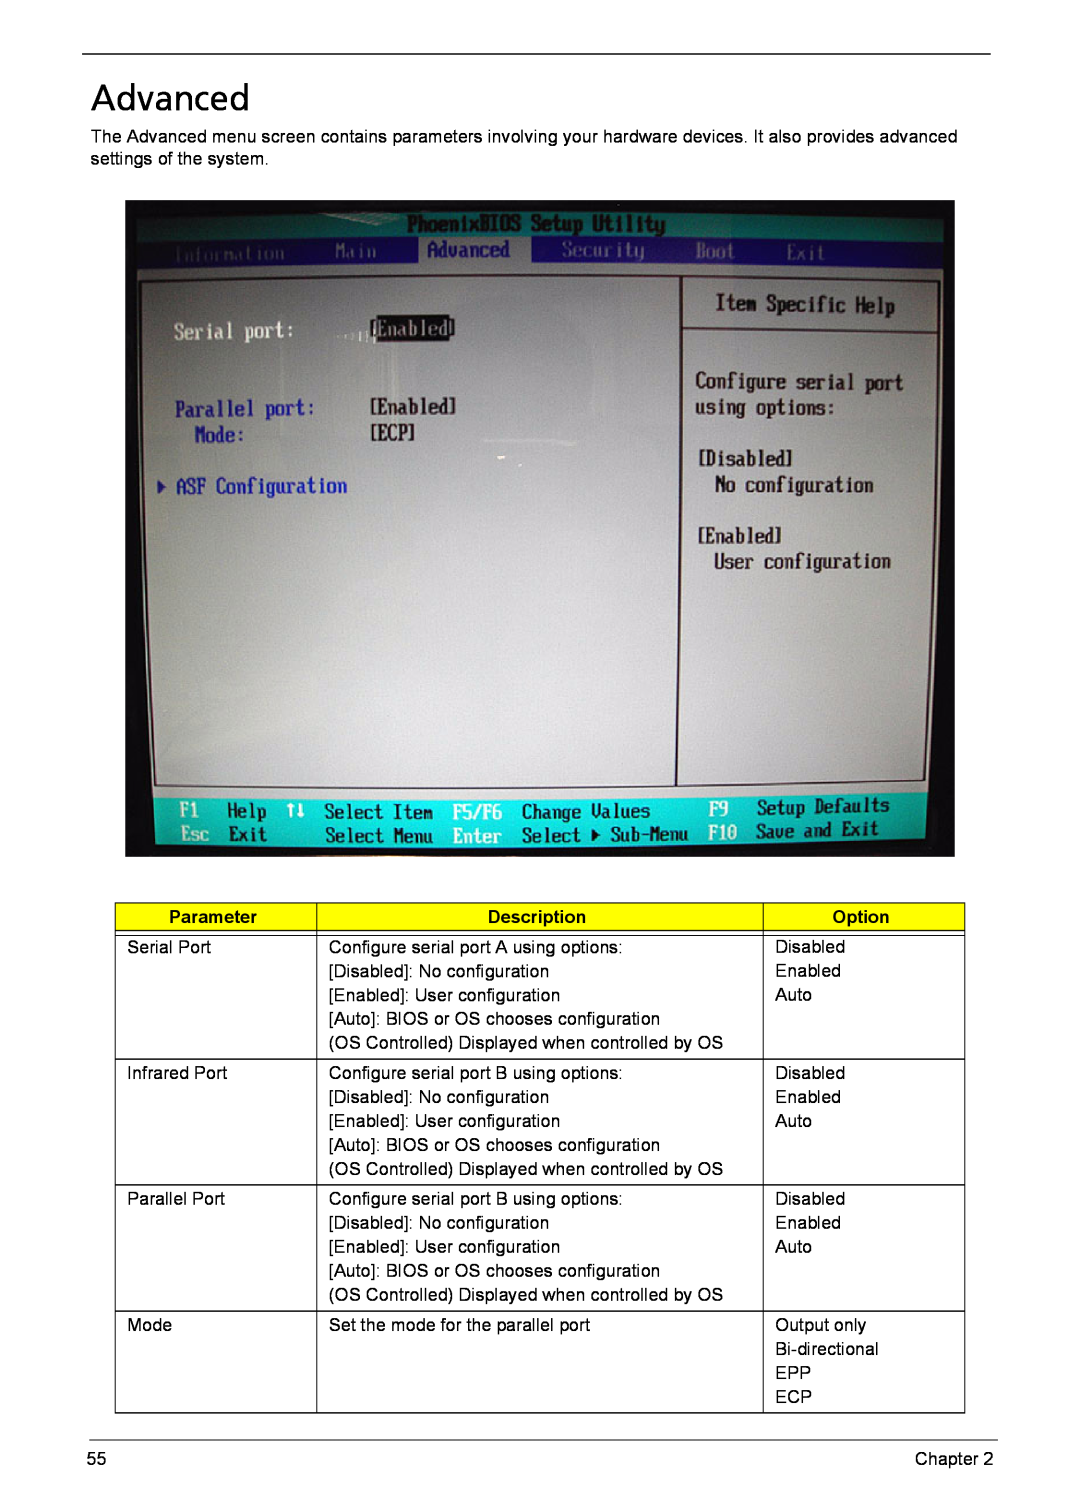 Acer 6460, 6410 manual Advanced, Option, Parameter, Description 